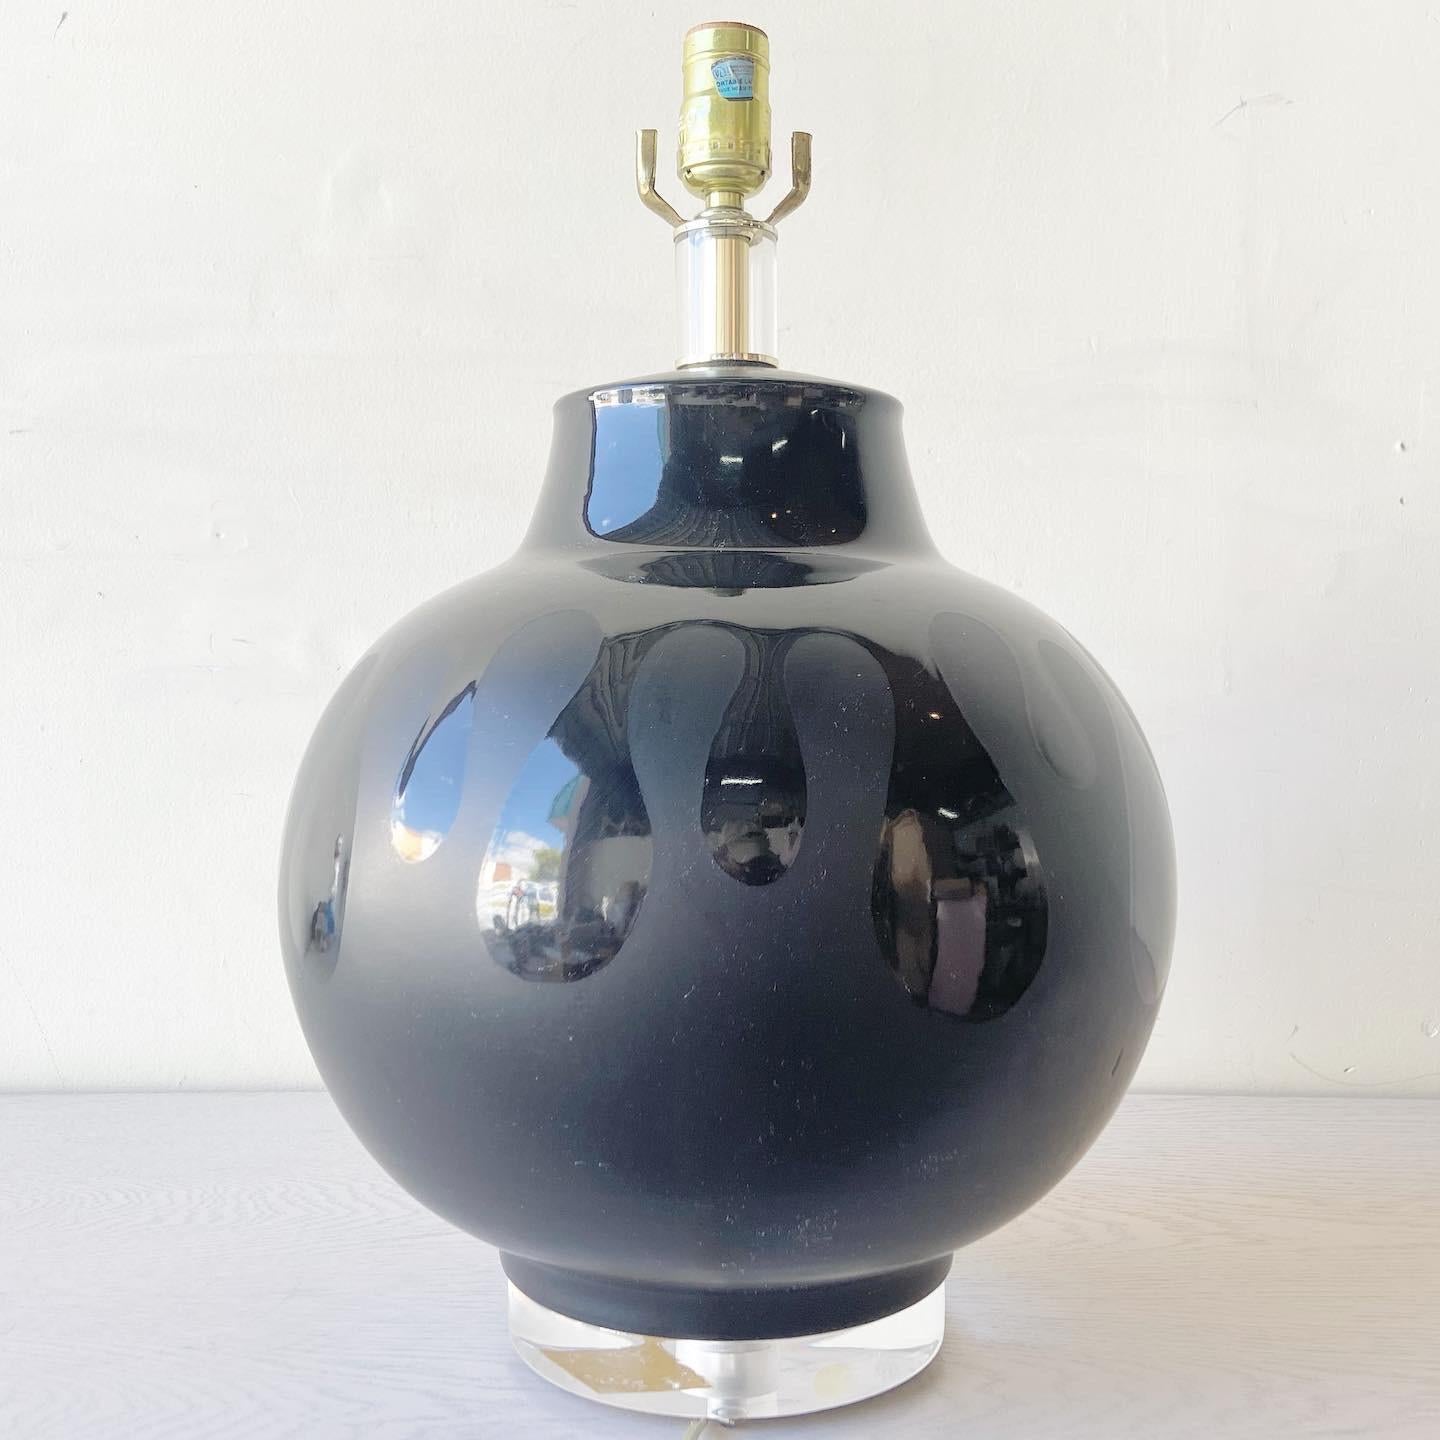 Incroyable lampe de table en céramique. Elle présente un design noir qui associe une finition brillante et une finition mate.
